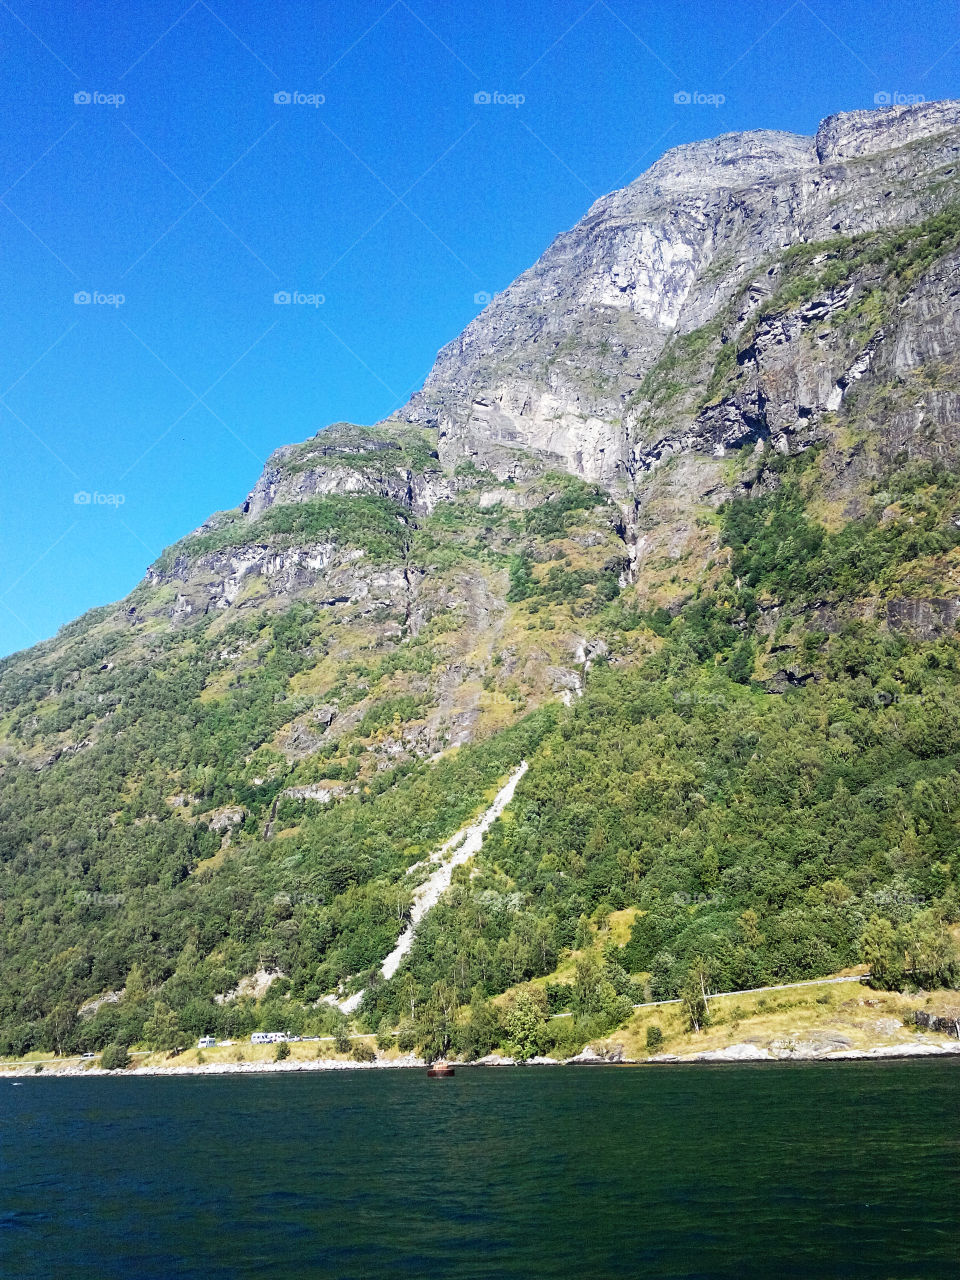 Summer in Norway